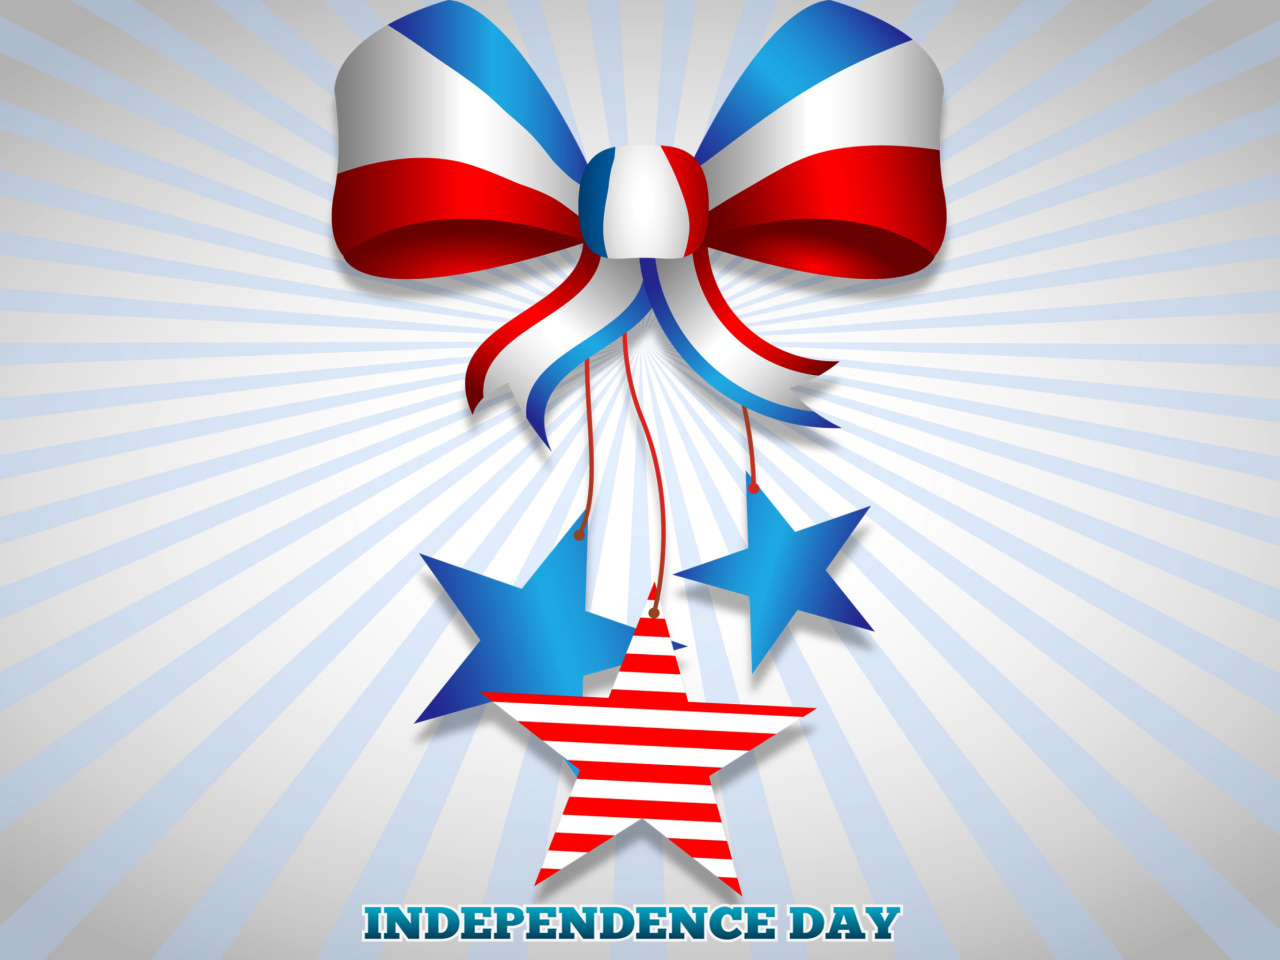 Sfondi United states america Idependence day 4th july 1280x960